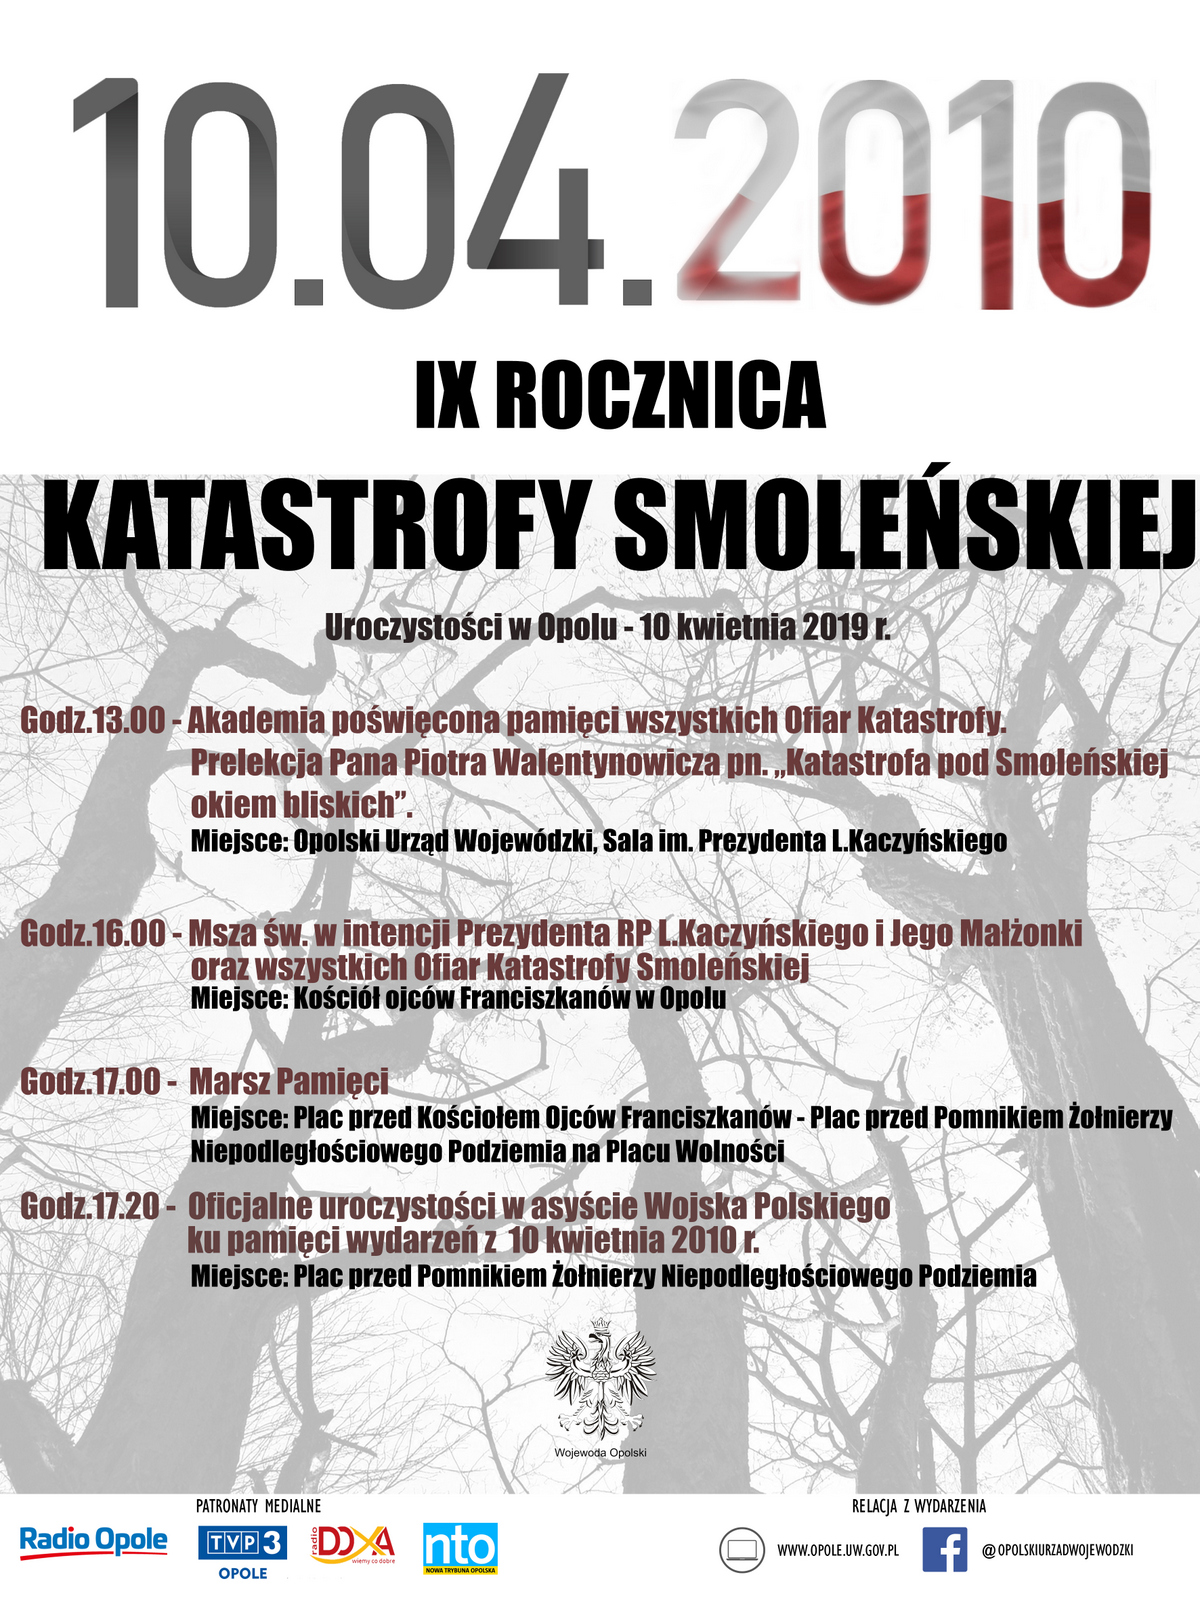 Program uroczystości obchodów IX rocznicy Katastrofy Smoleńskiej w Opolu 10 kwietnia 2019